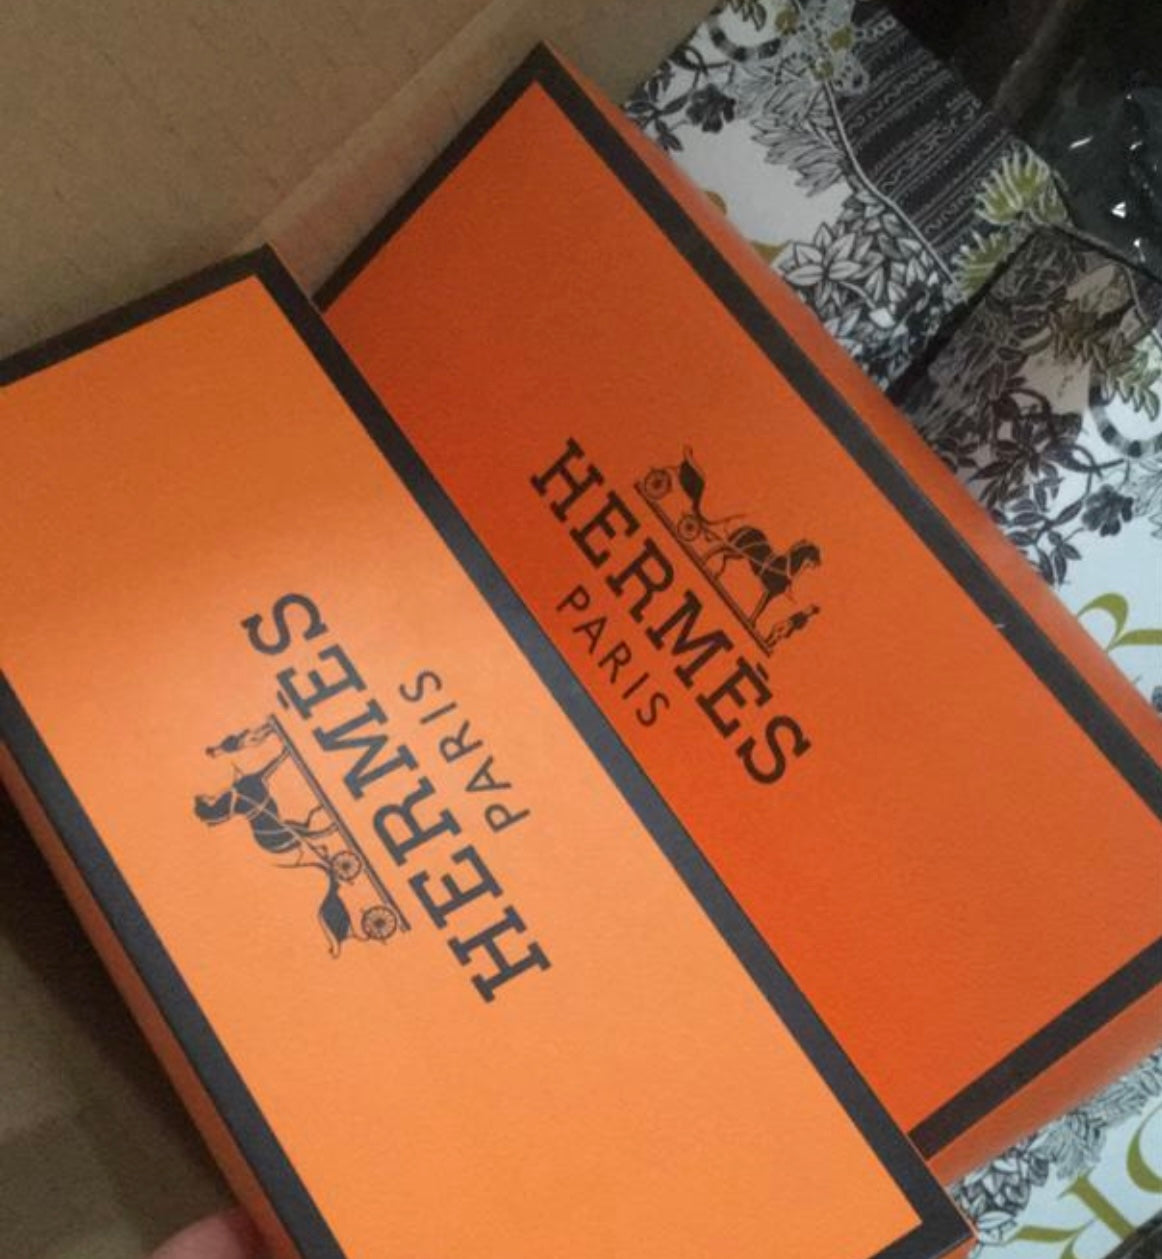 Hermes socks – Karleigh's Bowtique